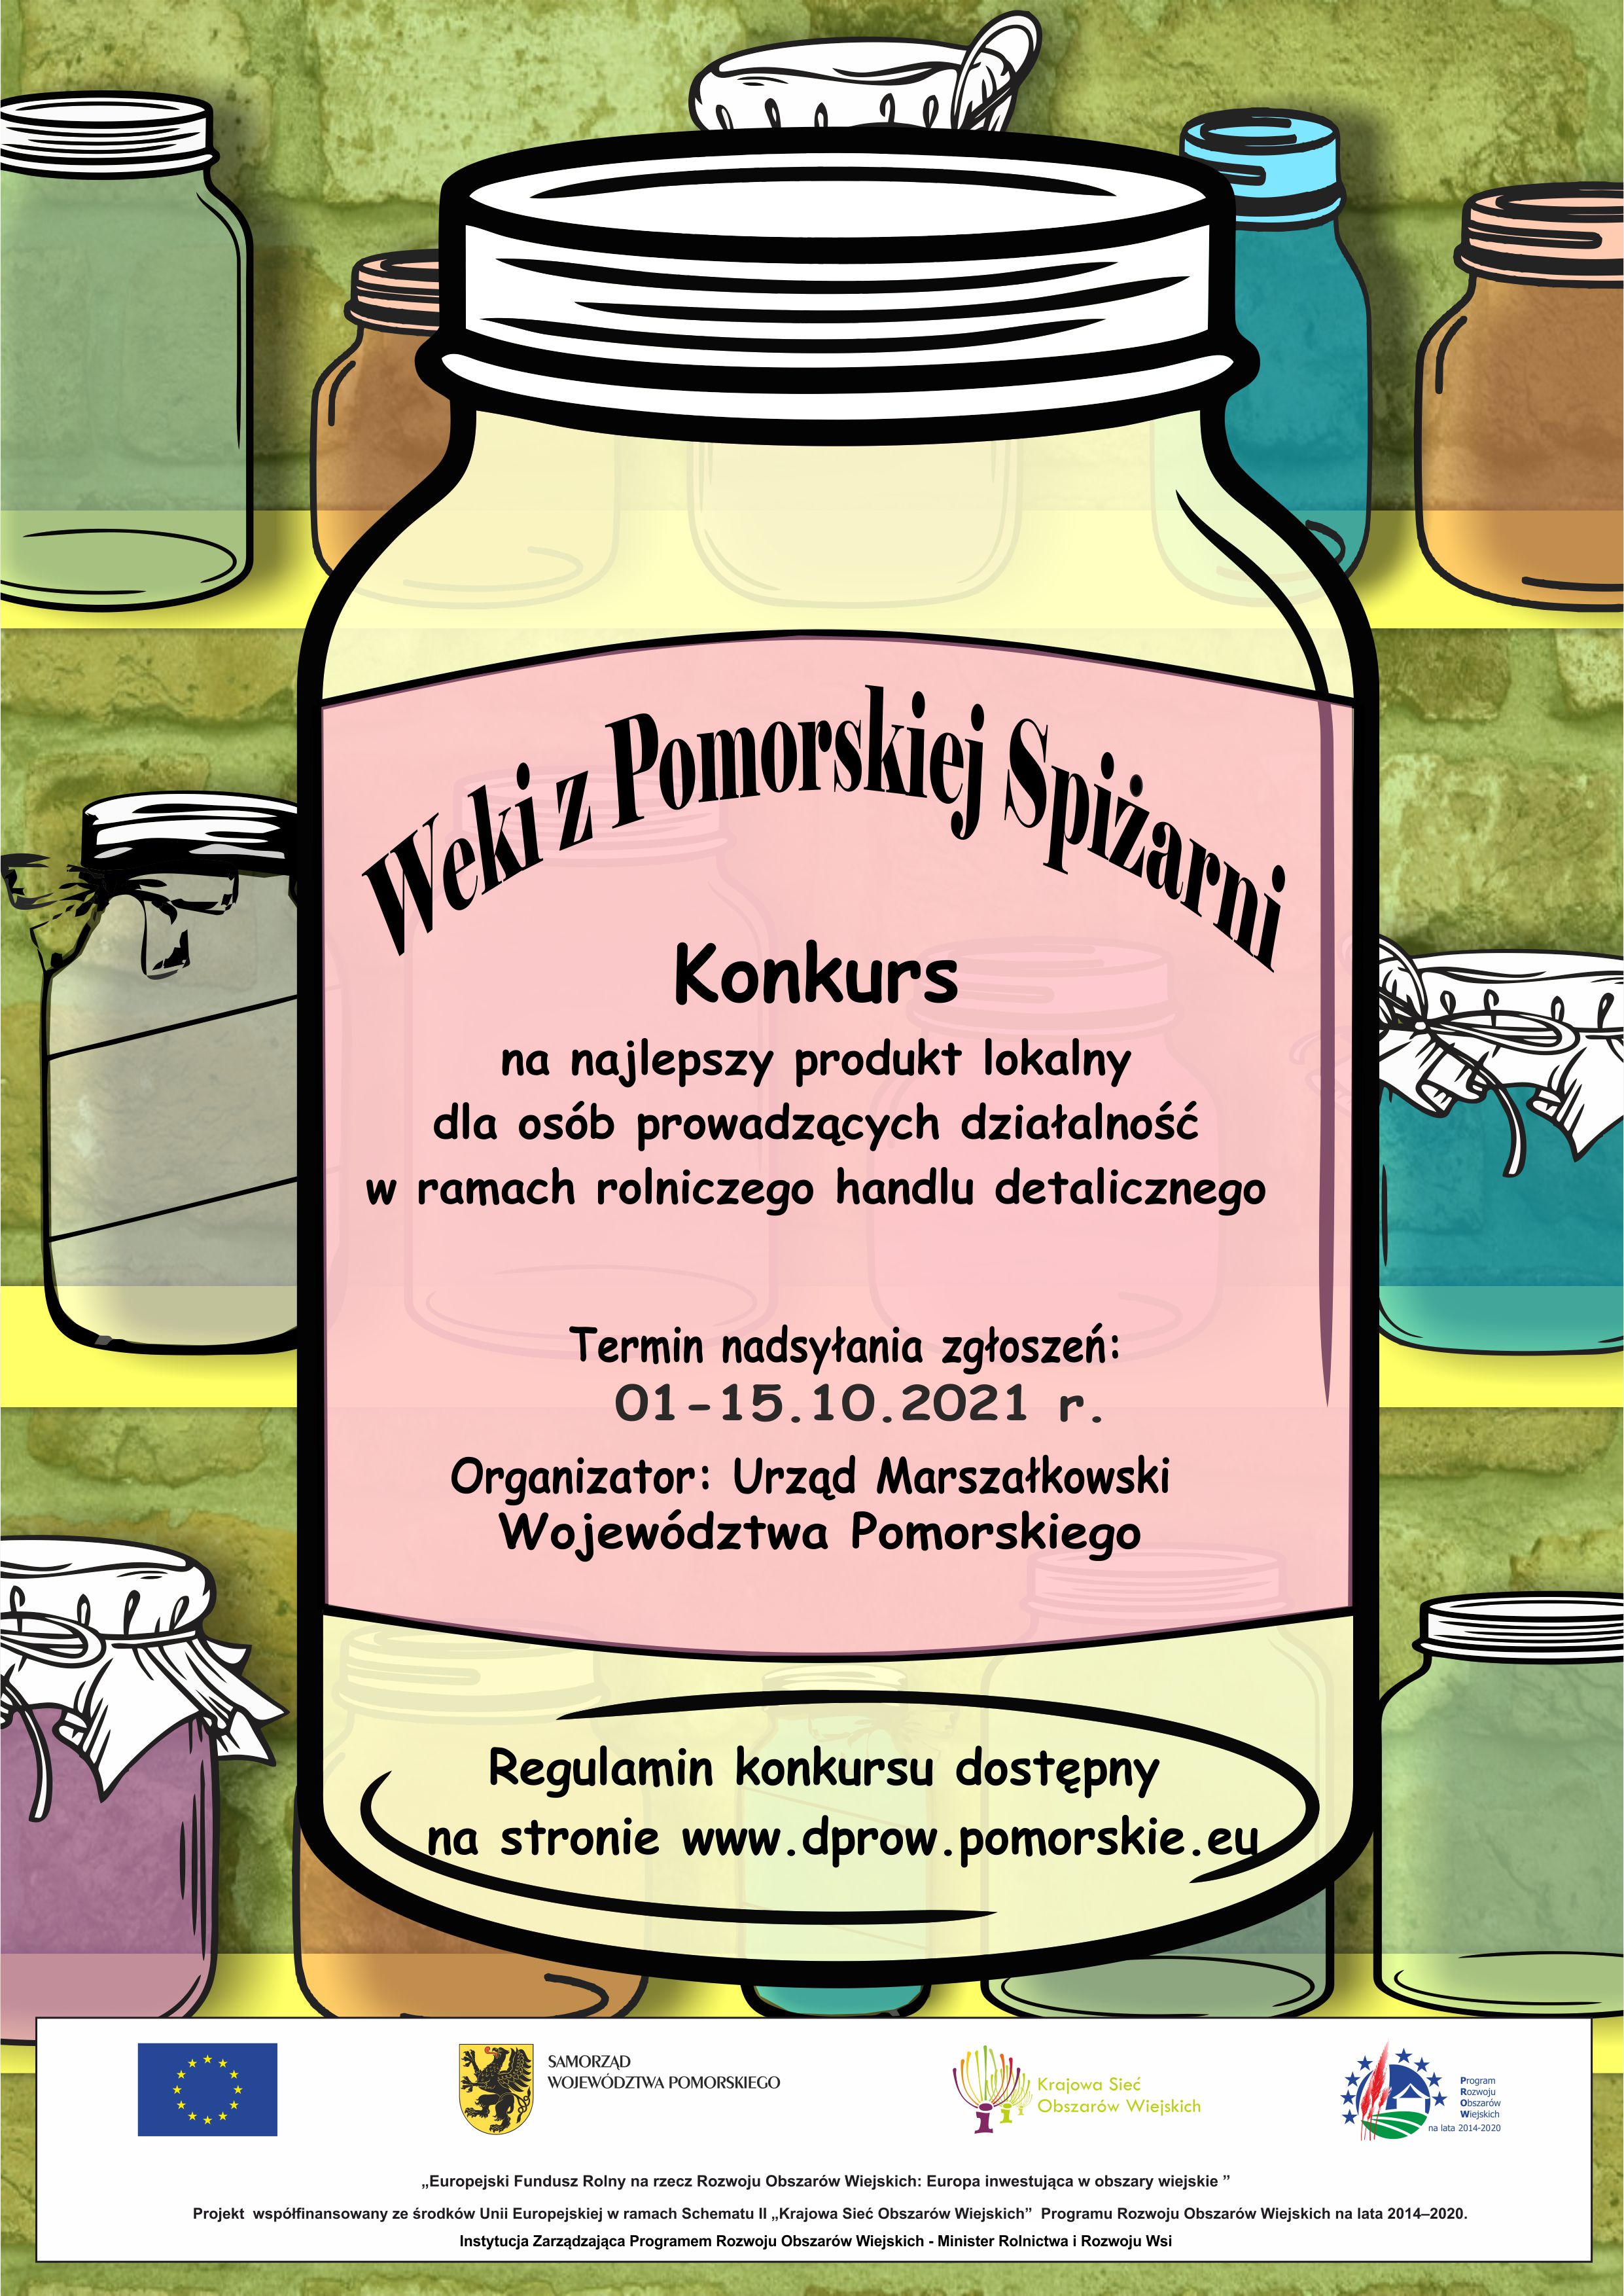 platak-Weki-z-Pomorskiej-Spizarni